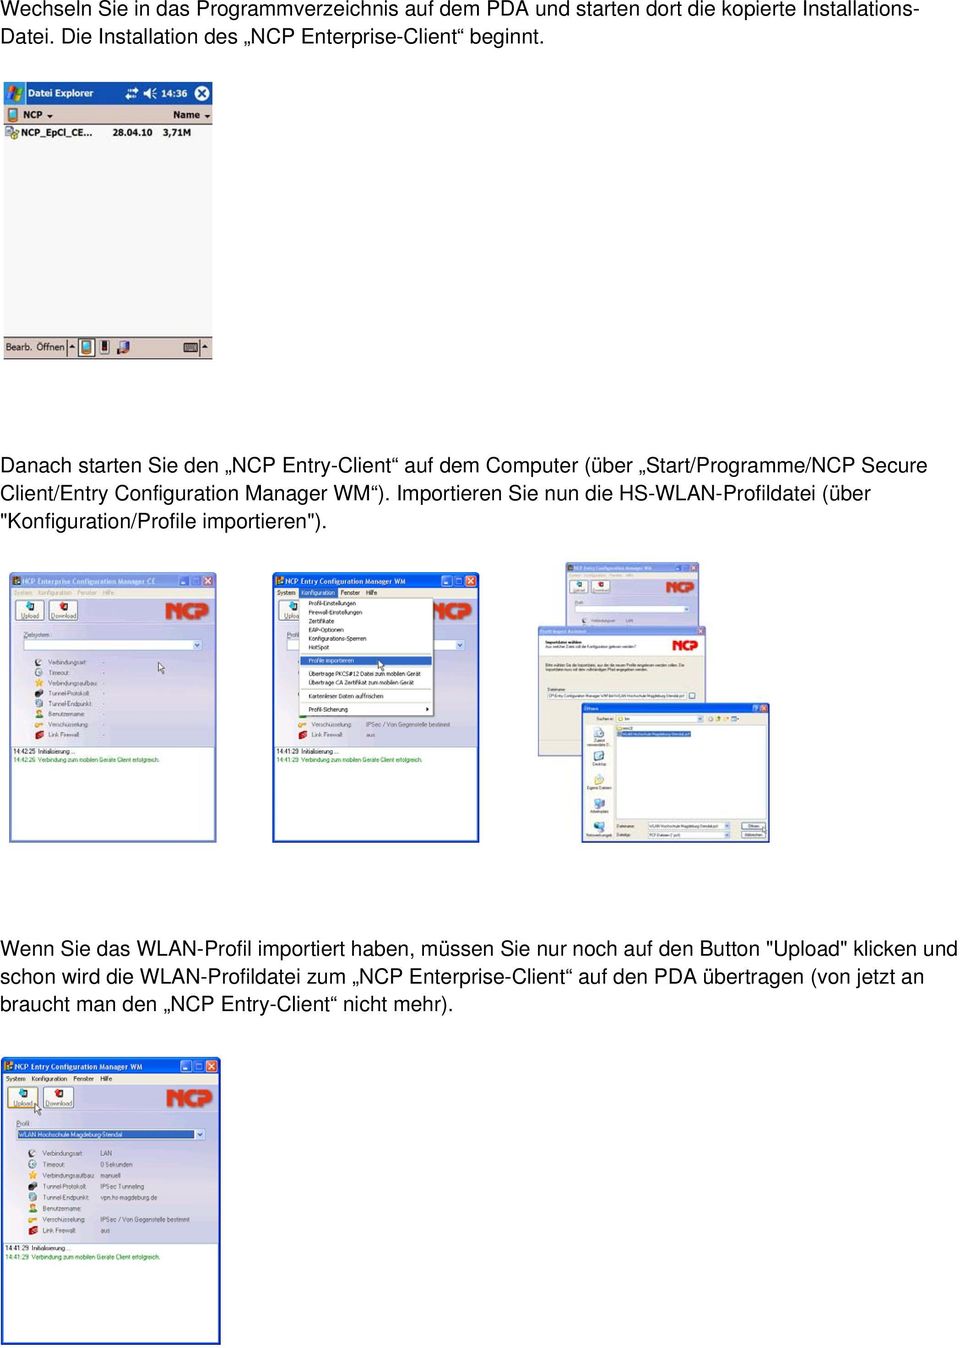 Danach starten Sie den NCP Entry-Client auf dem Computer (über Start/Programme/NCP Secure Client/Entry Configuration Manager WM ).